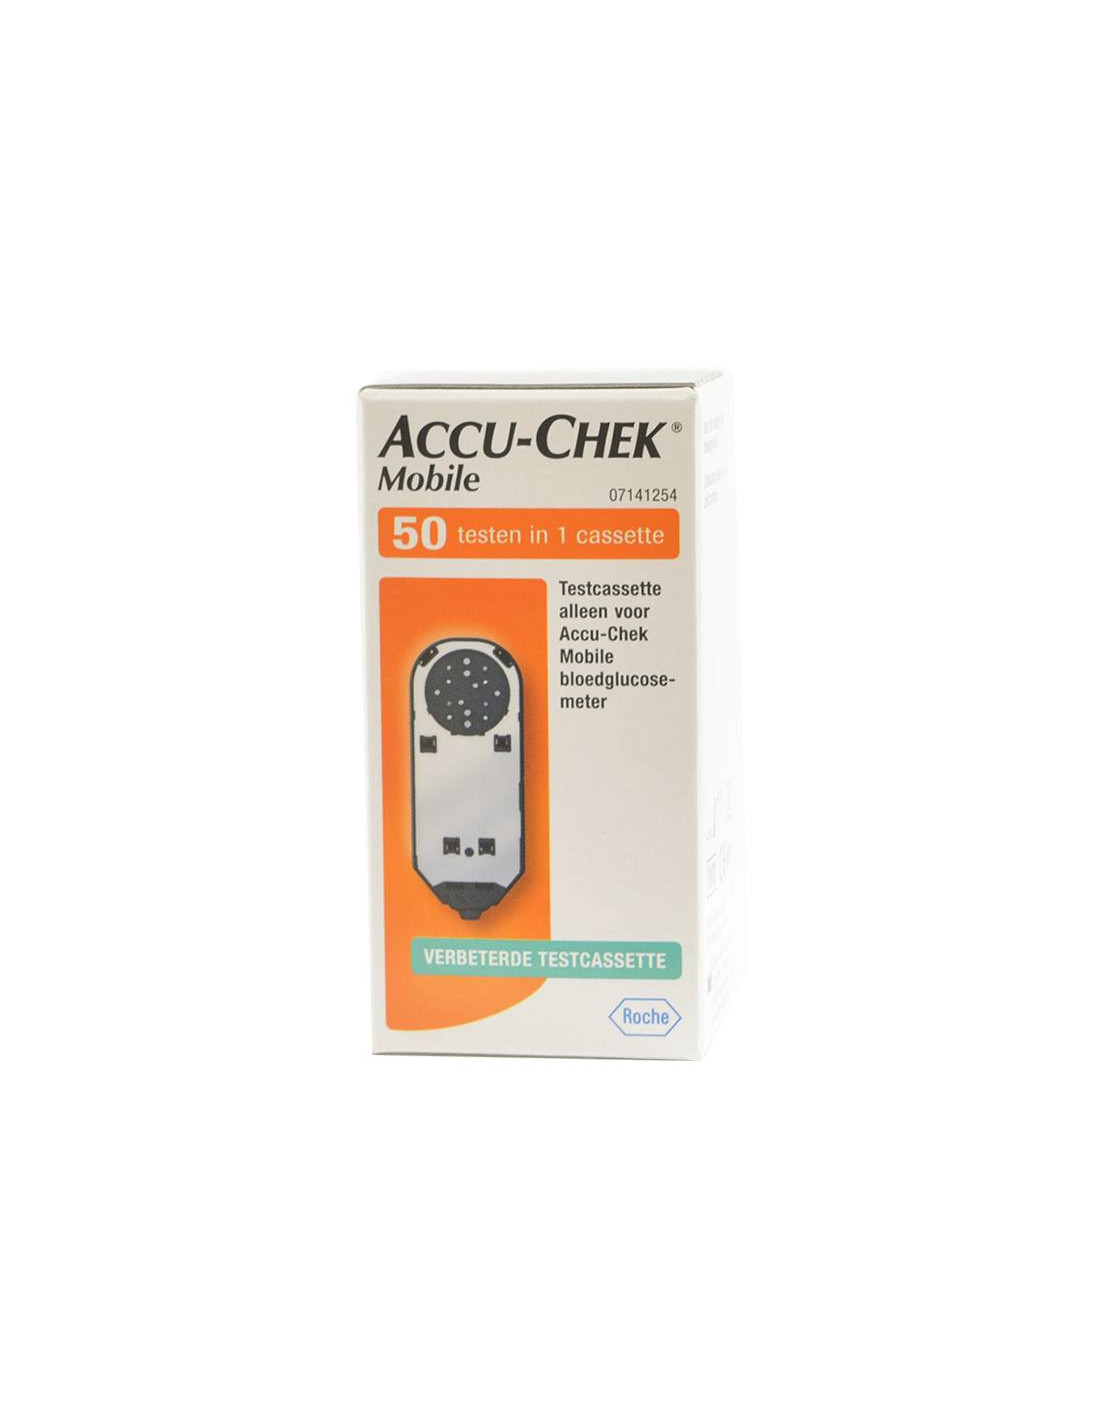 Accu-Chek Mobile teststrimler 50 stk, Bestil hurtigt og billigt hos Multicare-Centrum.nl, Hurtig levering ✓ fortrydelsesfrist